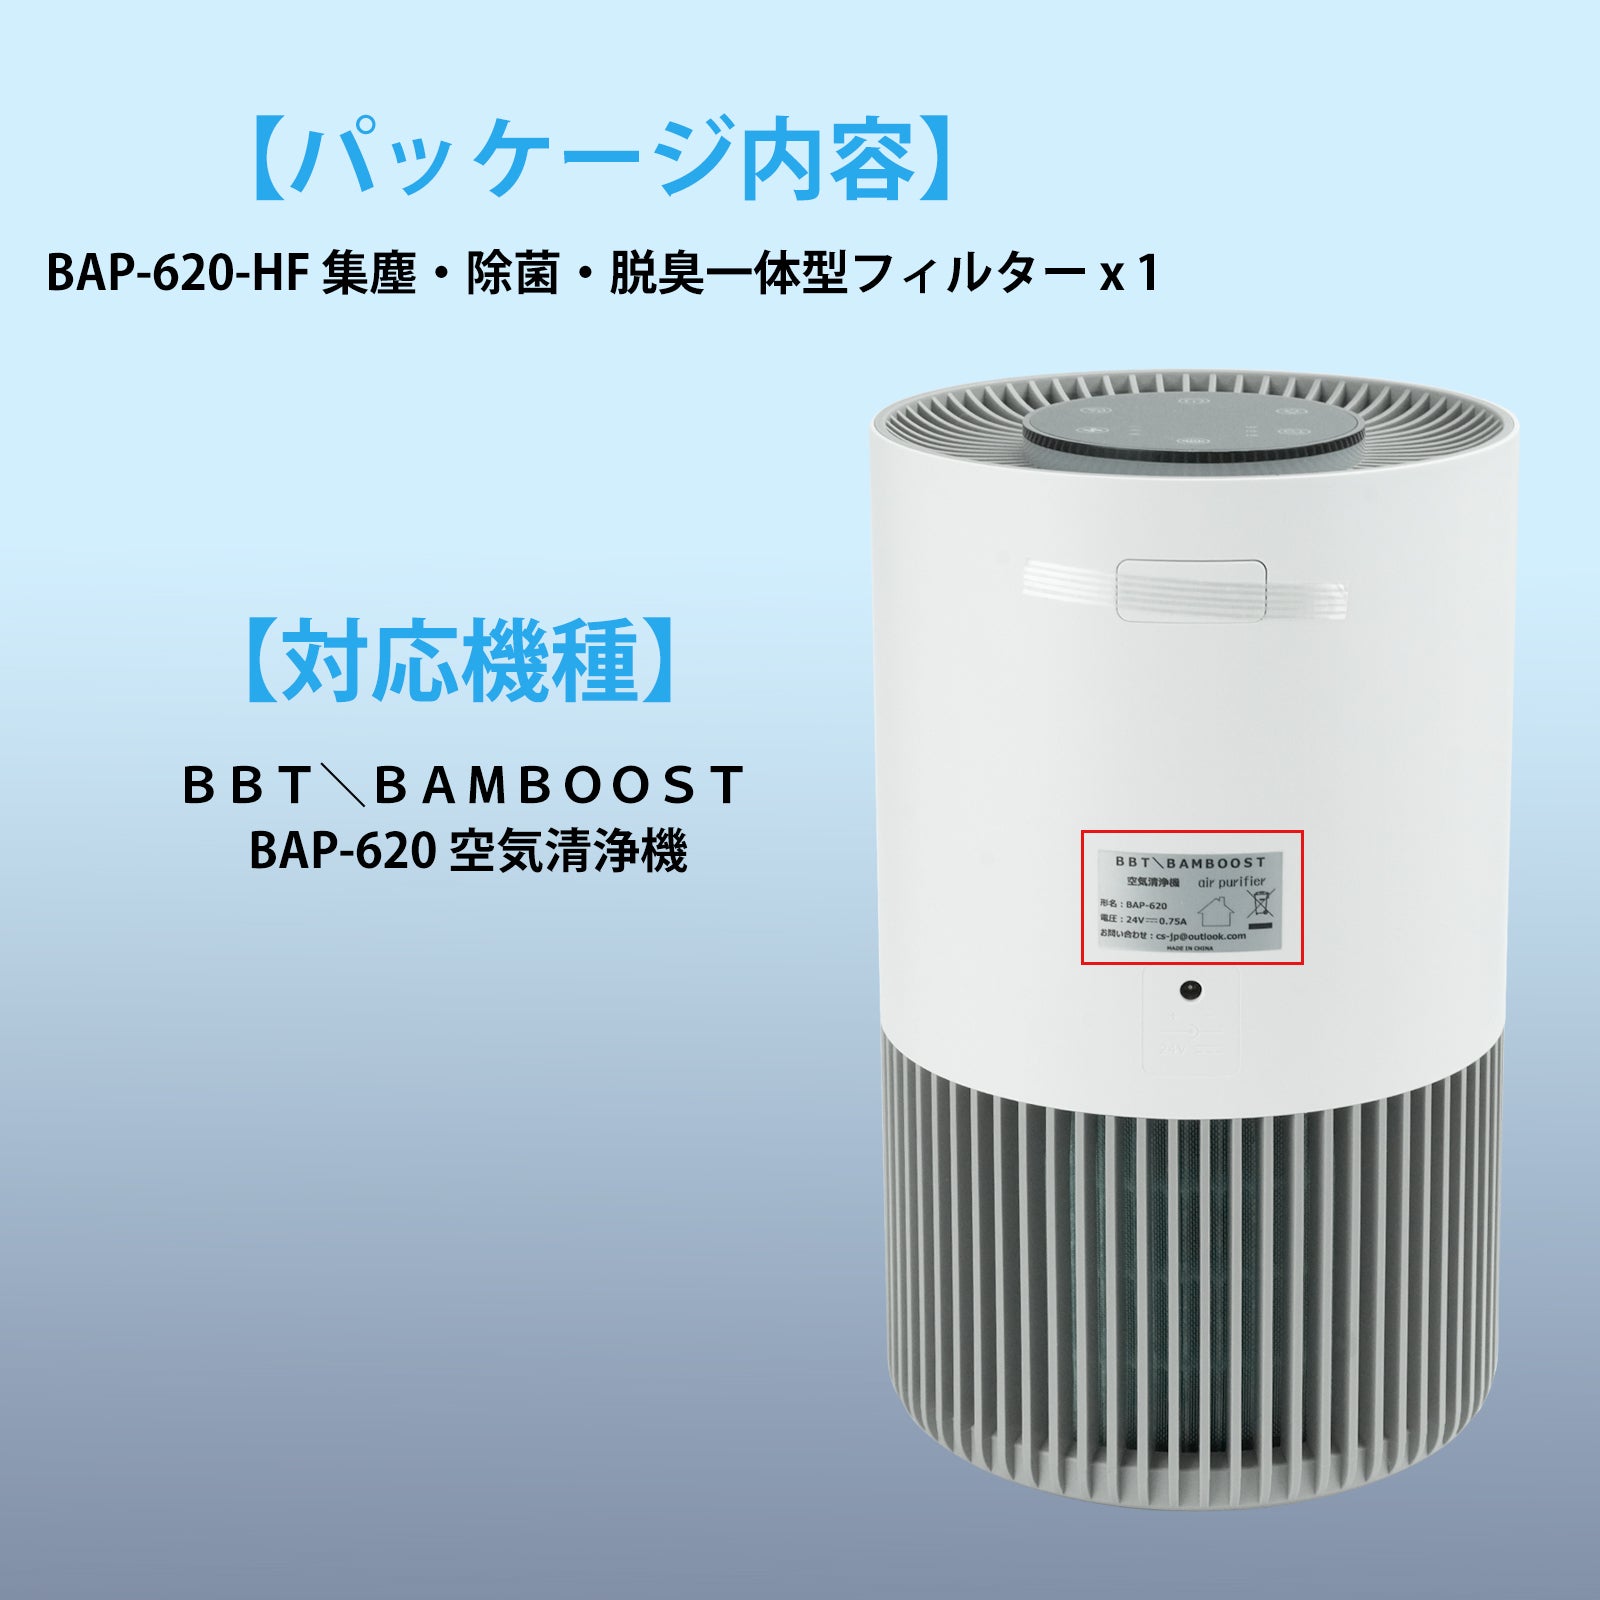 BBT 空気清浄機 BAP-620 交換用フィルター 四層濾過フィルター 集塵 除菌 脱臭 一体型 フィルター HEPA 活性炭 BAP-6 – BBY